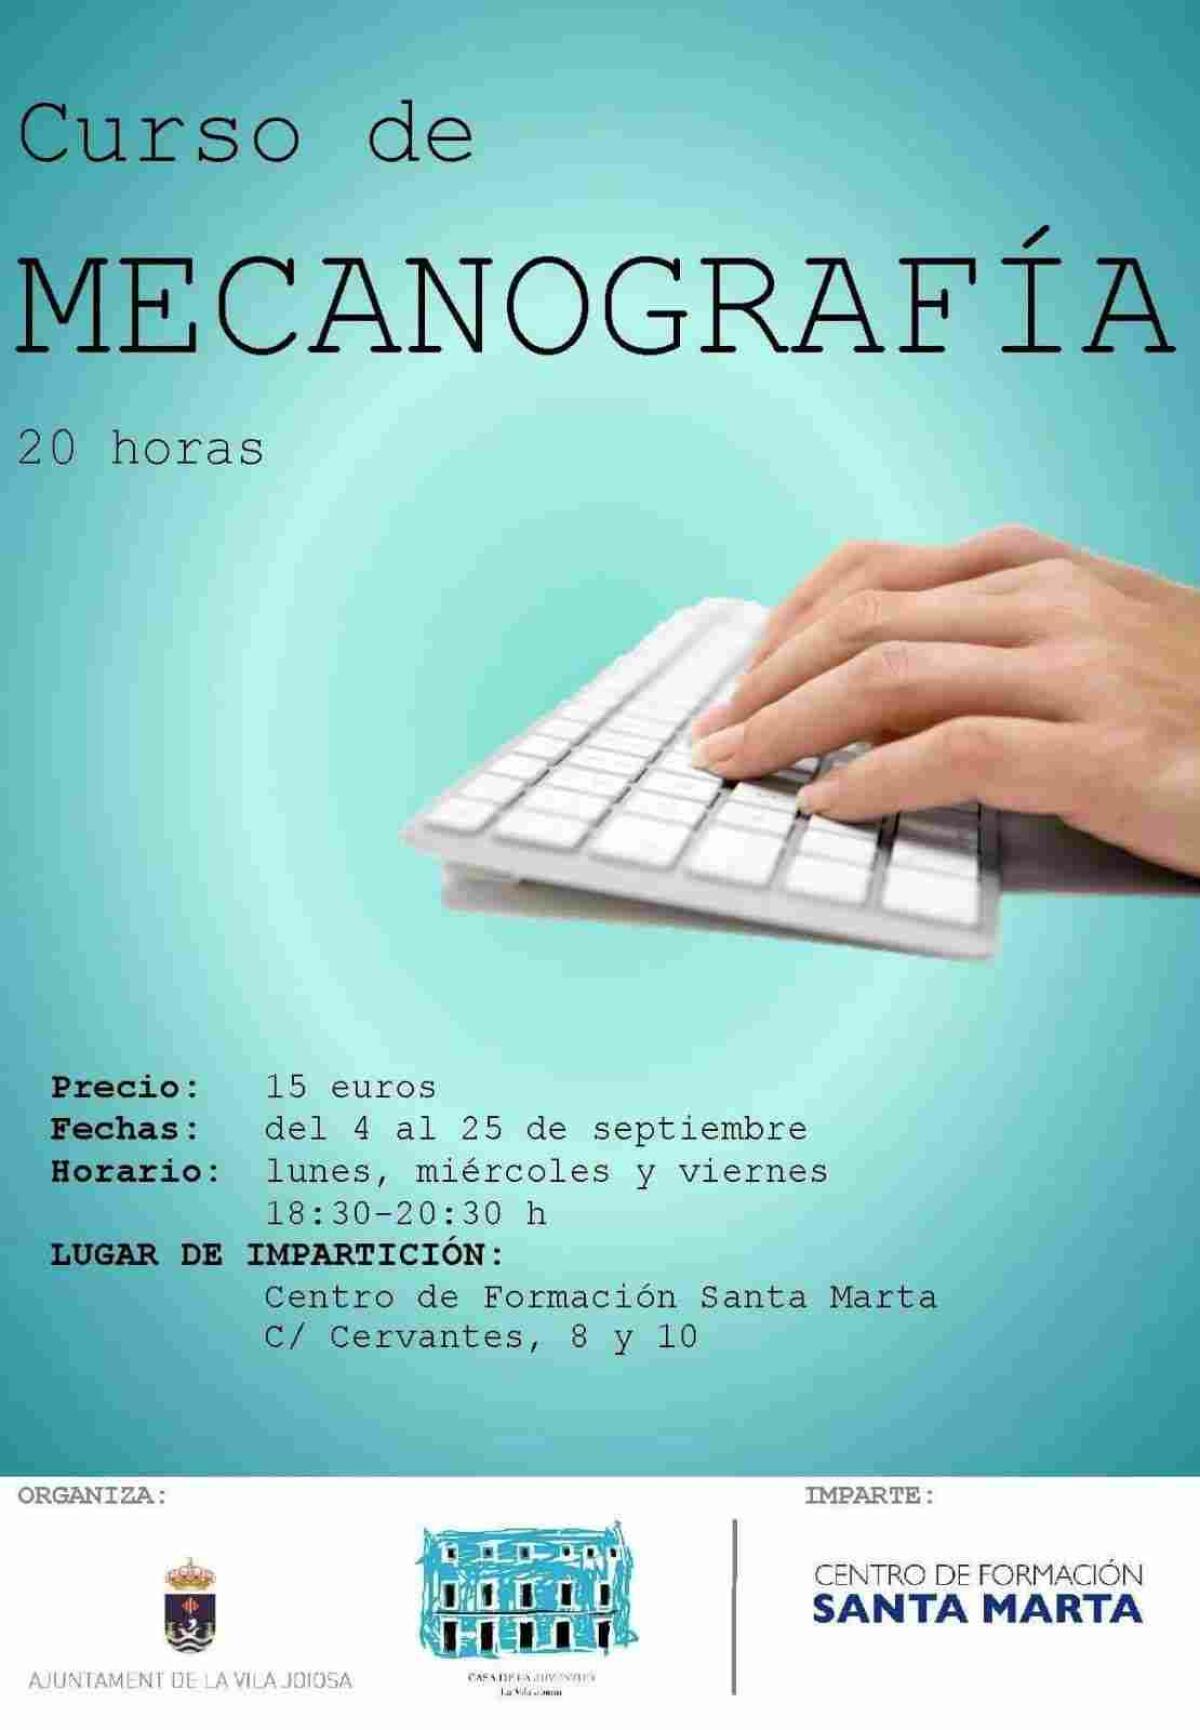 El ayuntamiento de la Vila Joiosa organiza un curso de mecanografía